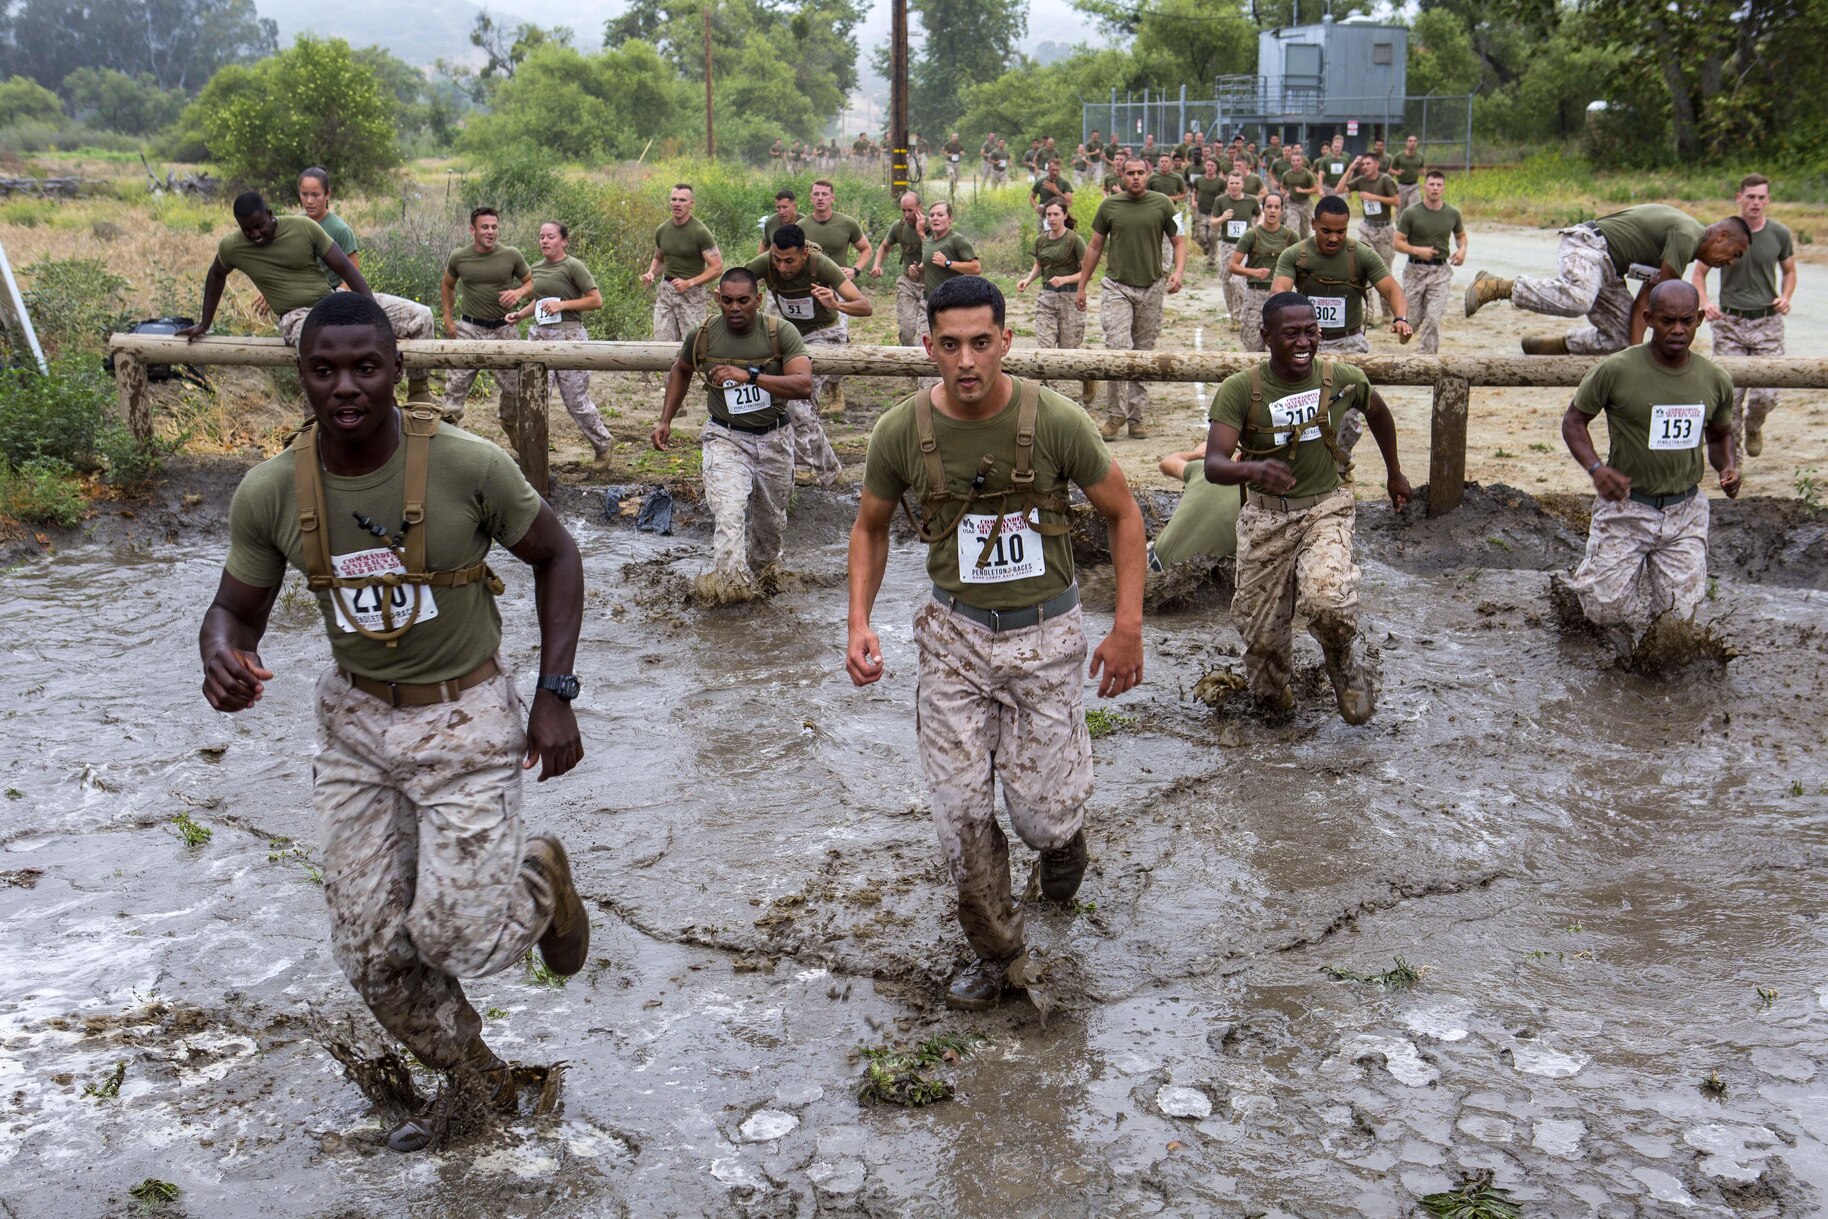 Mud Runners